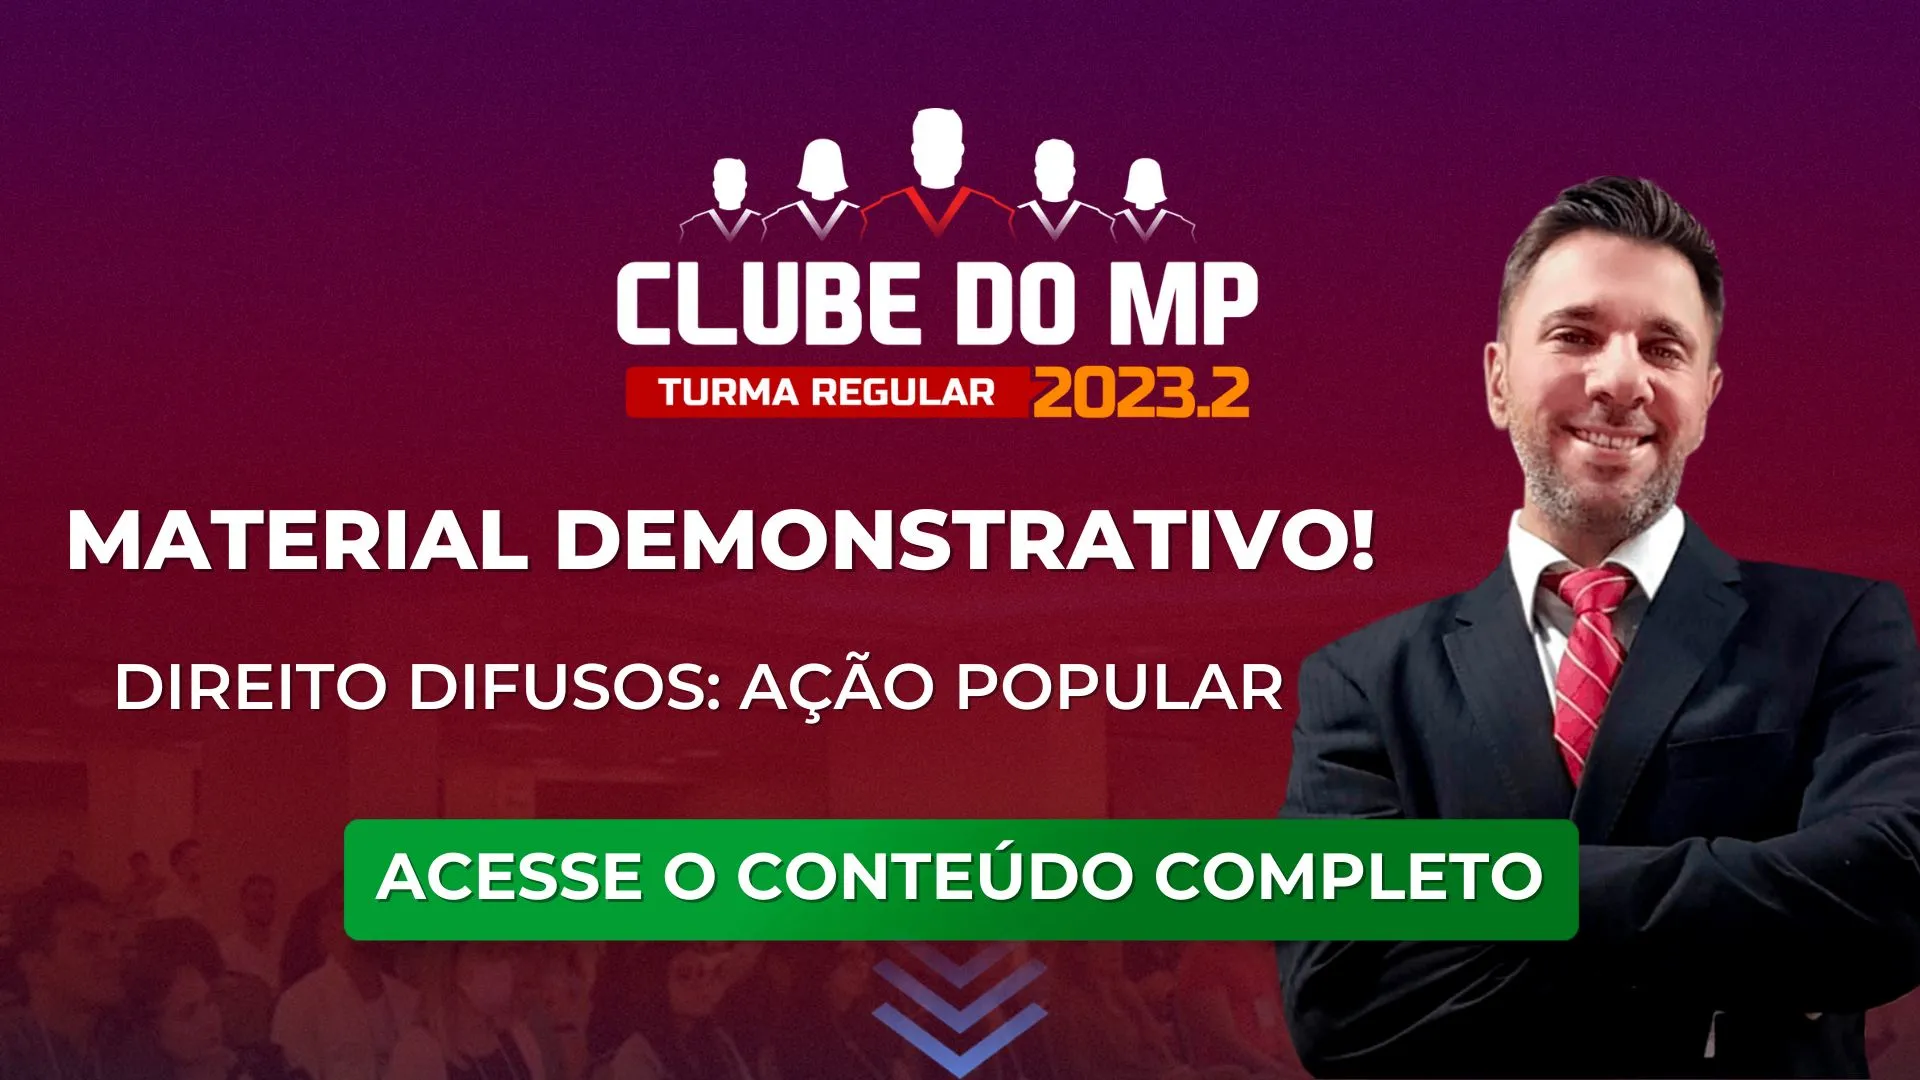 Clube do MP 2023.2: material demonstrativo sobre Ação Popular